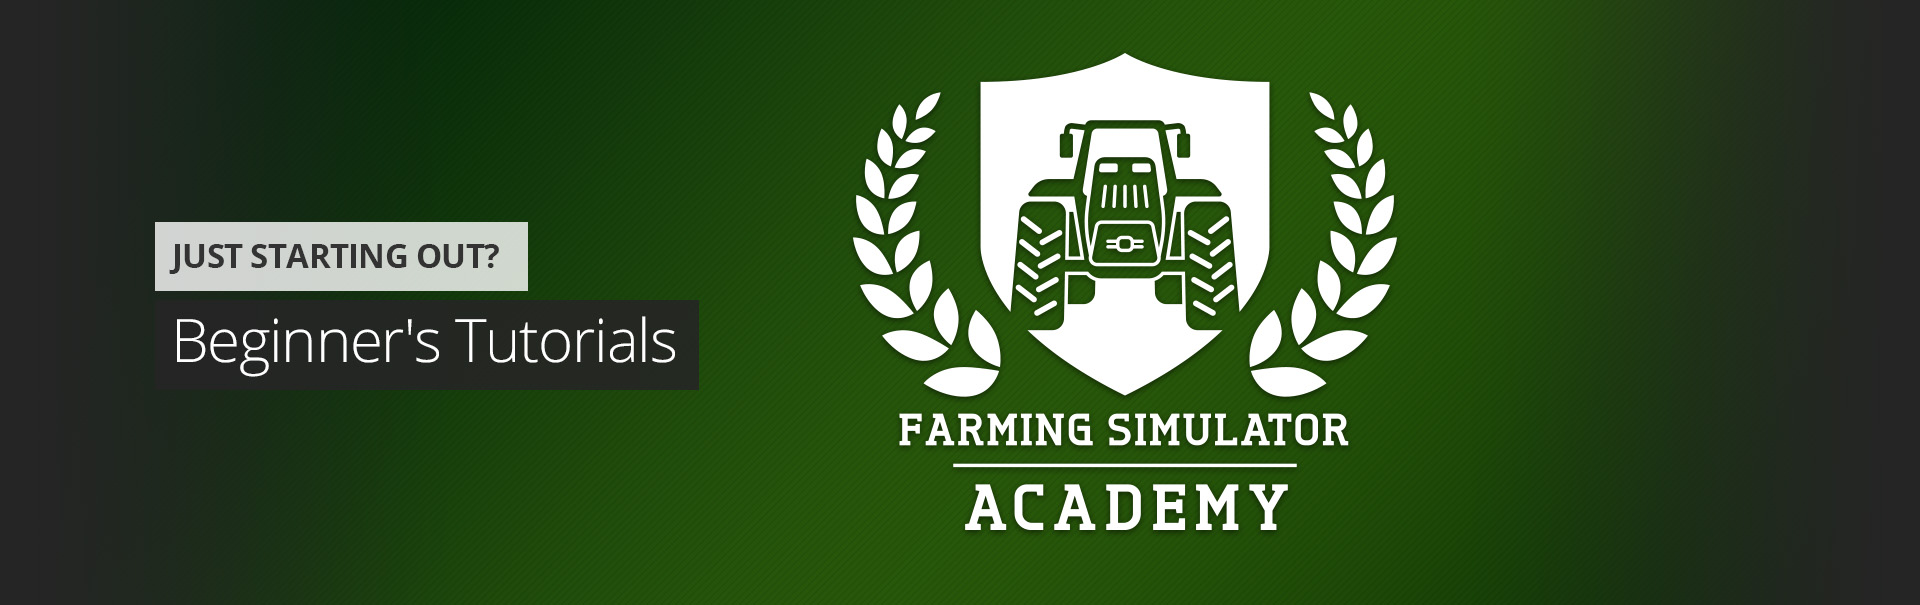 農業模擬器學院